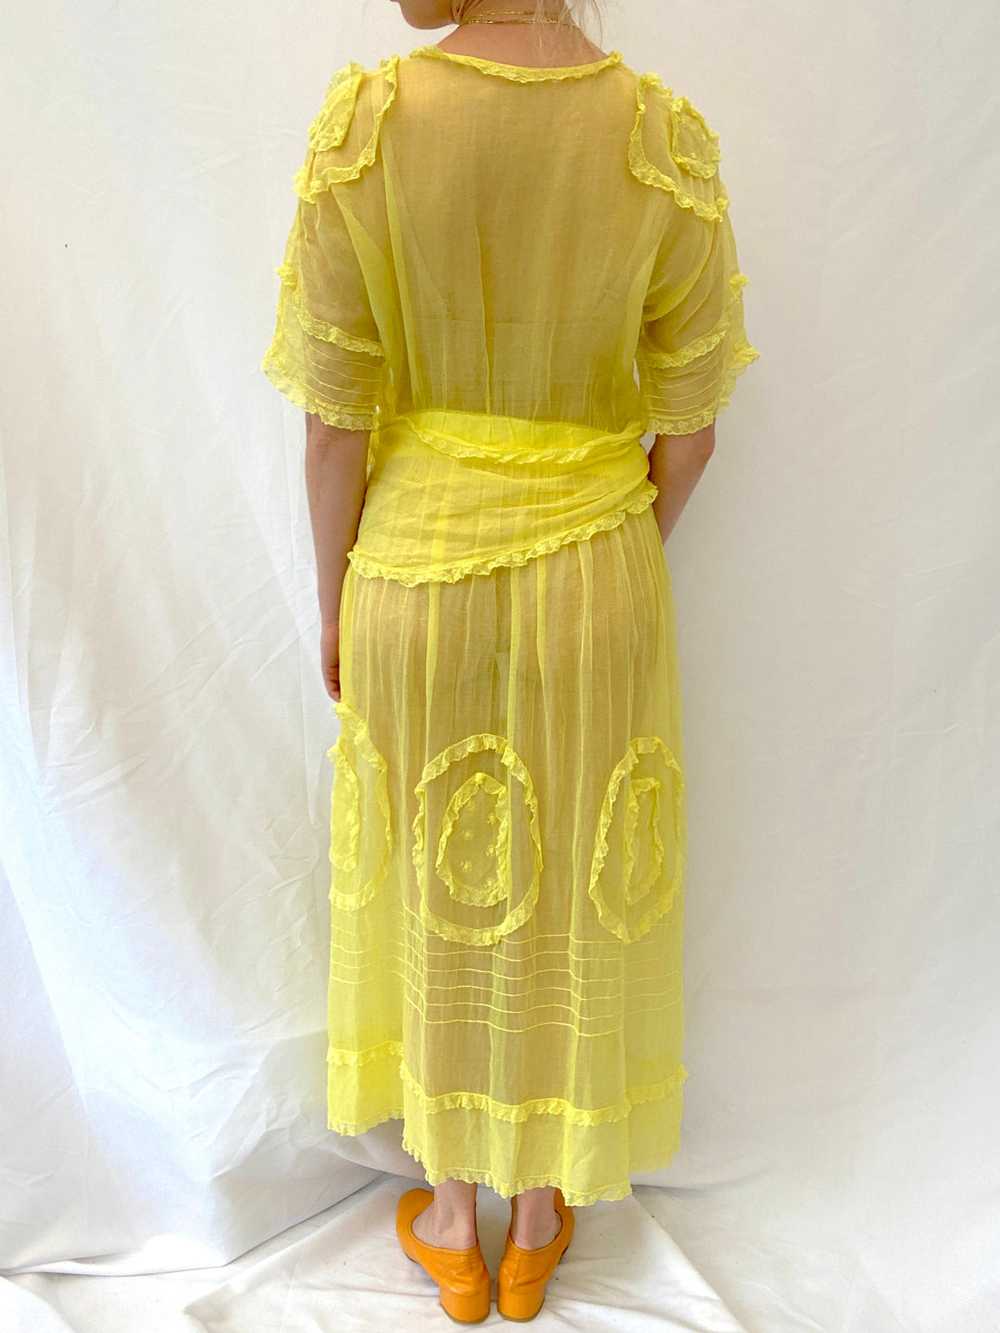 Hand Dyed Yellow Edwardian Organza Dress - image 9